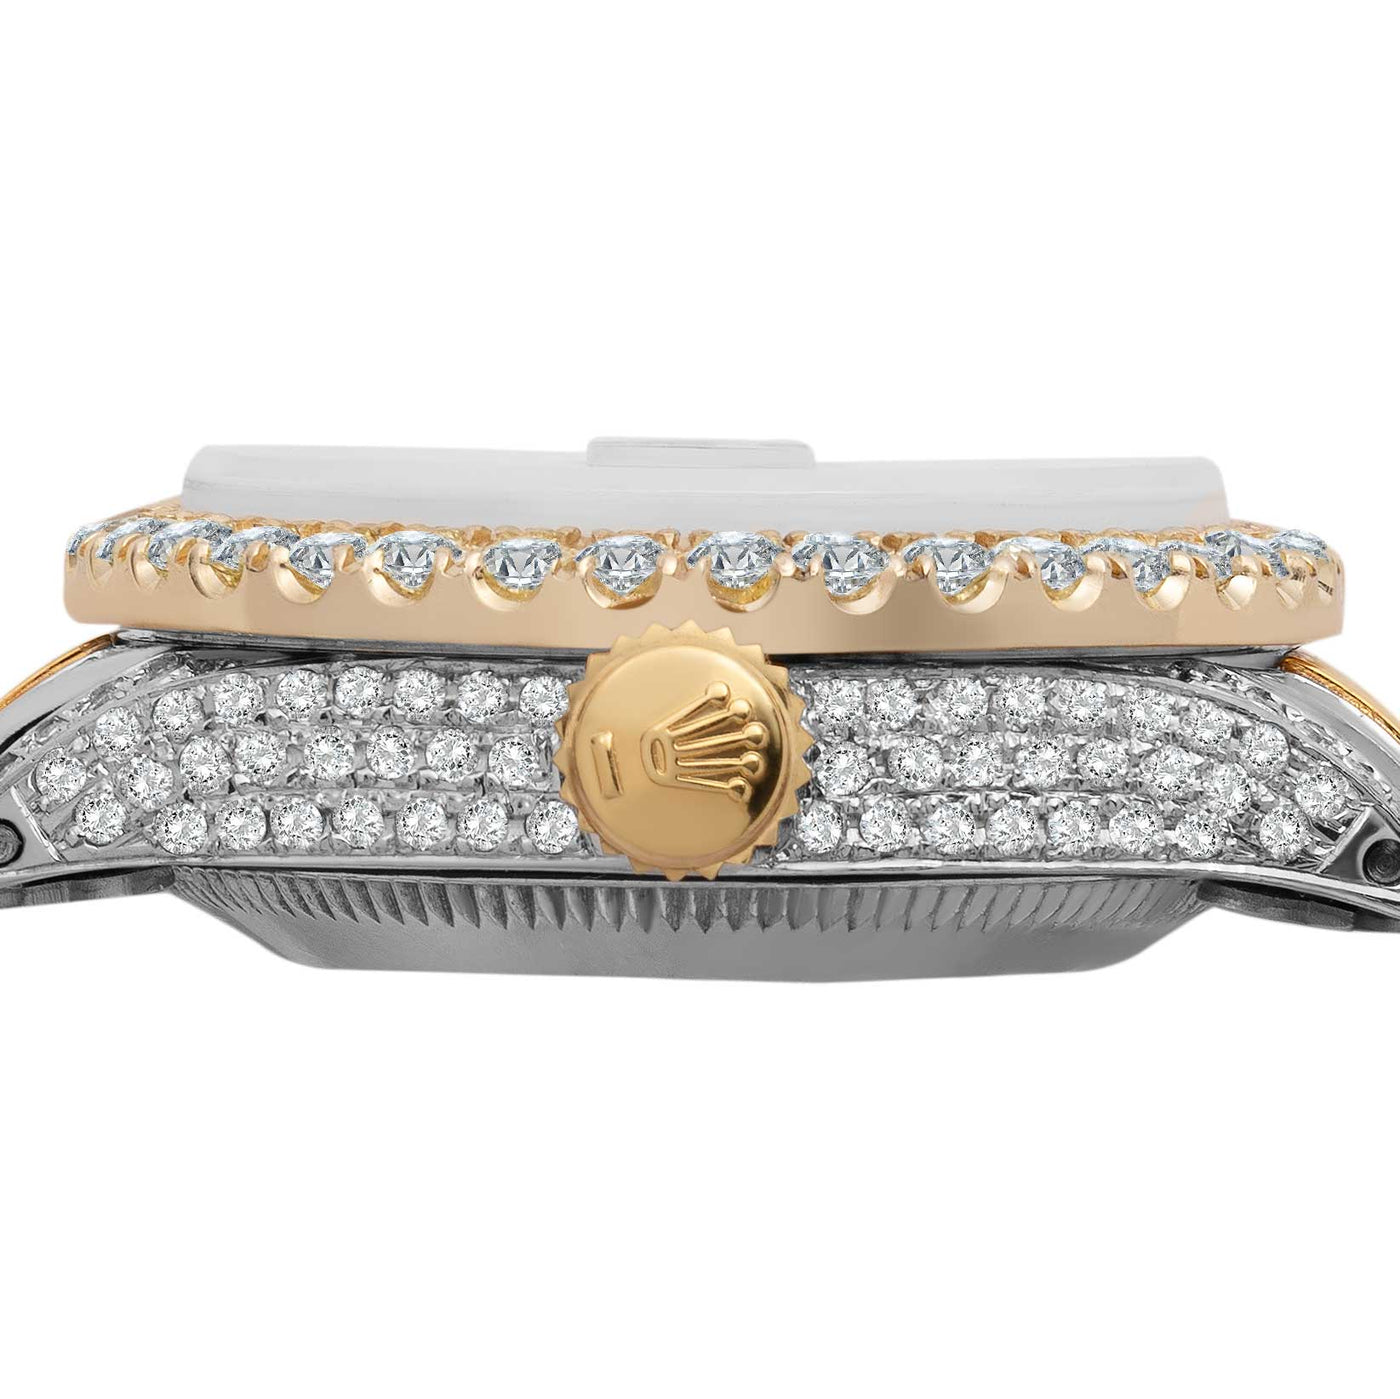 Women Rolex Datejust Diamond Bezel Watch 26mm Blue Dial | 6.20ct